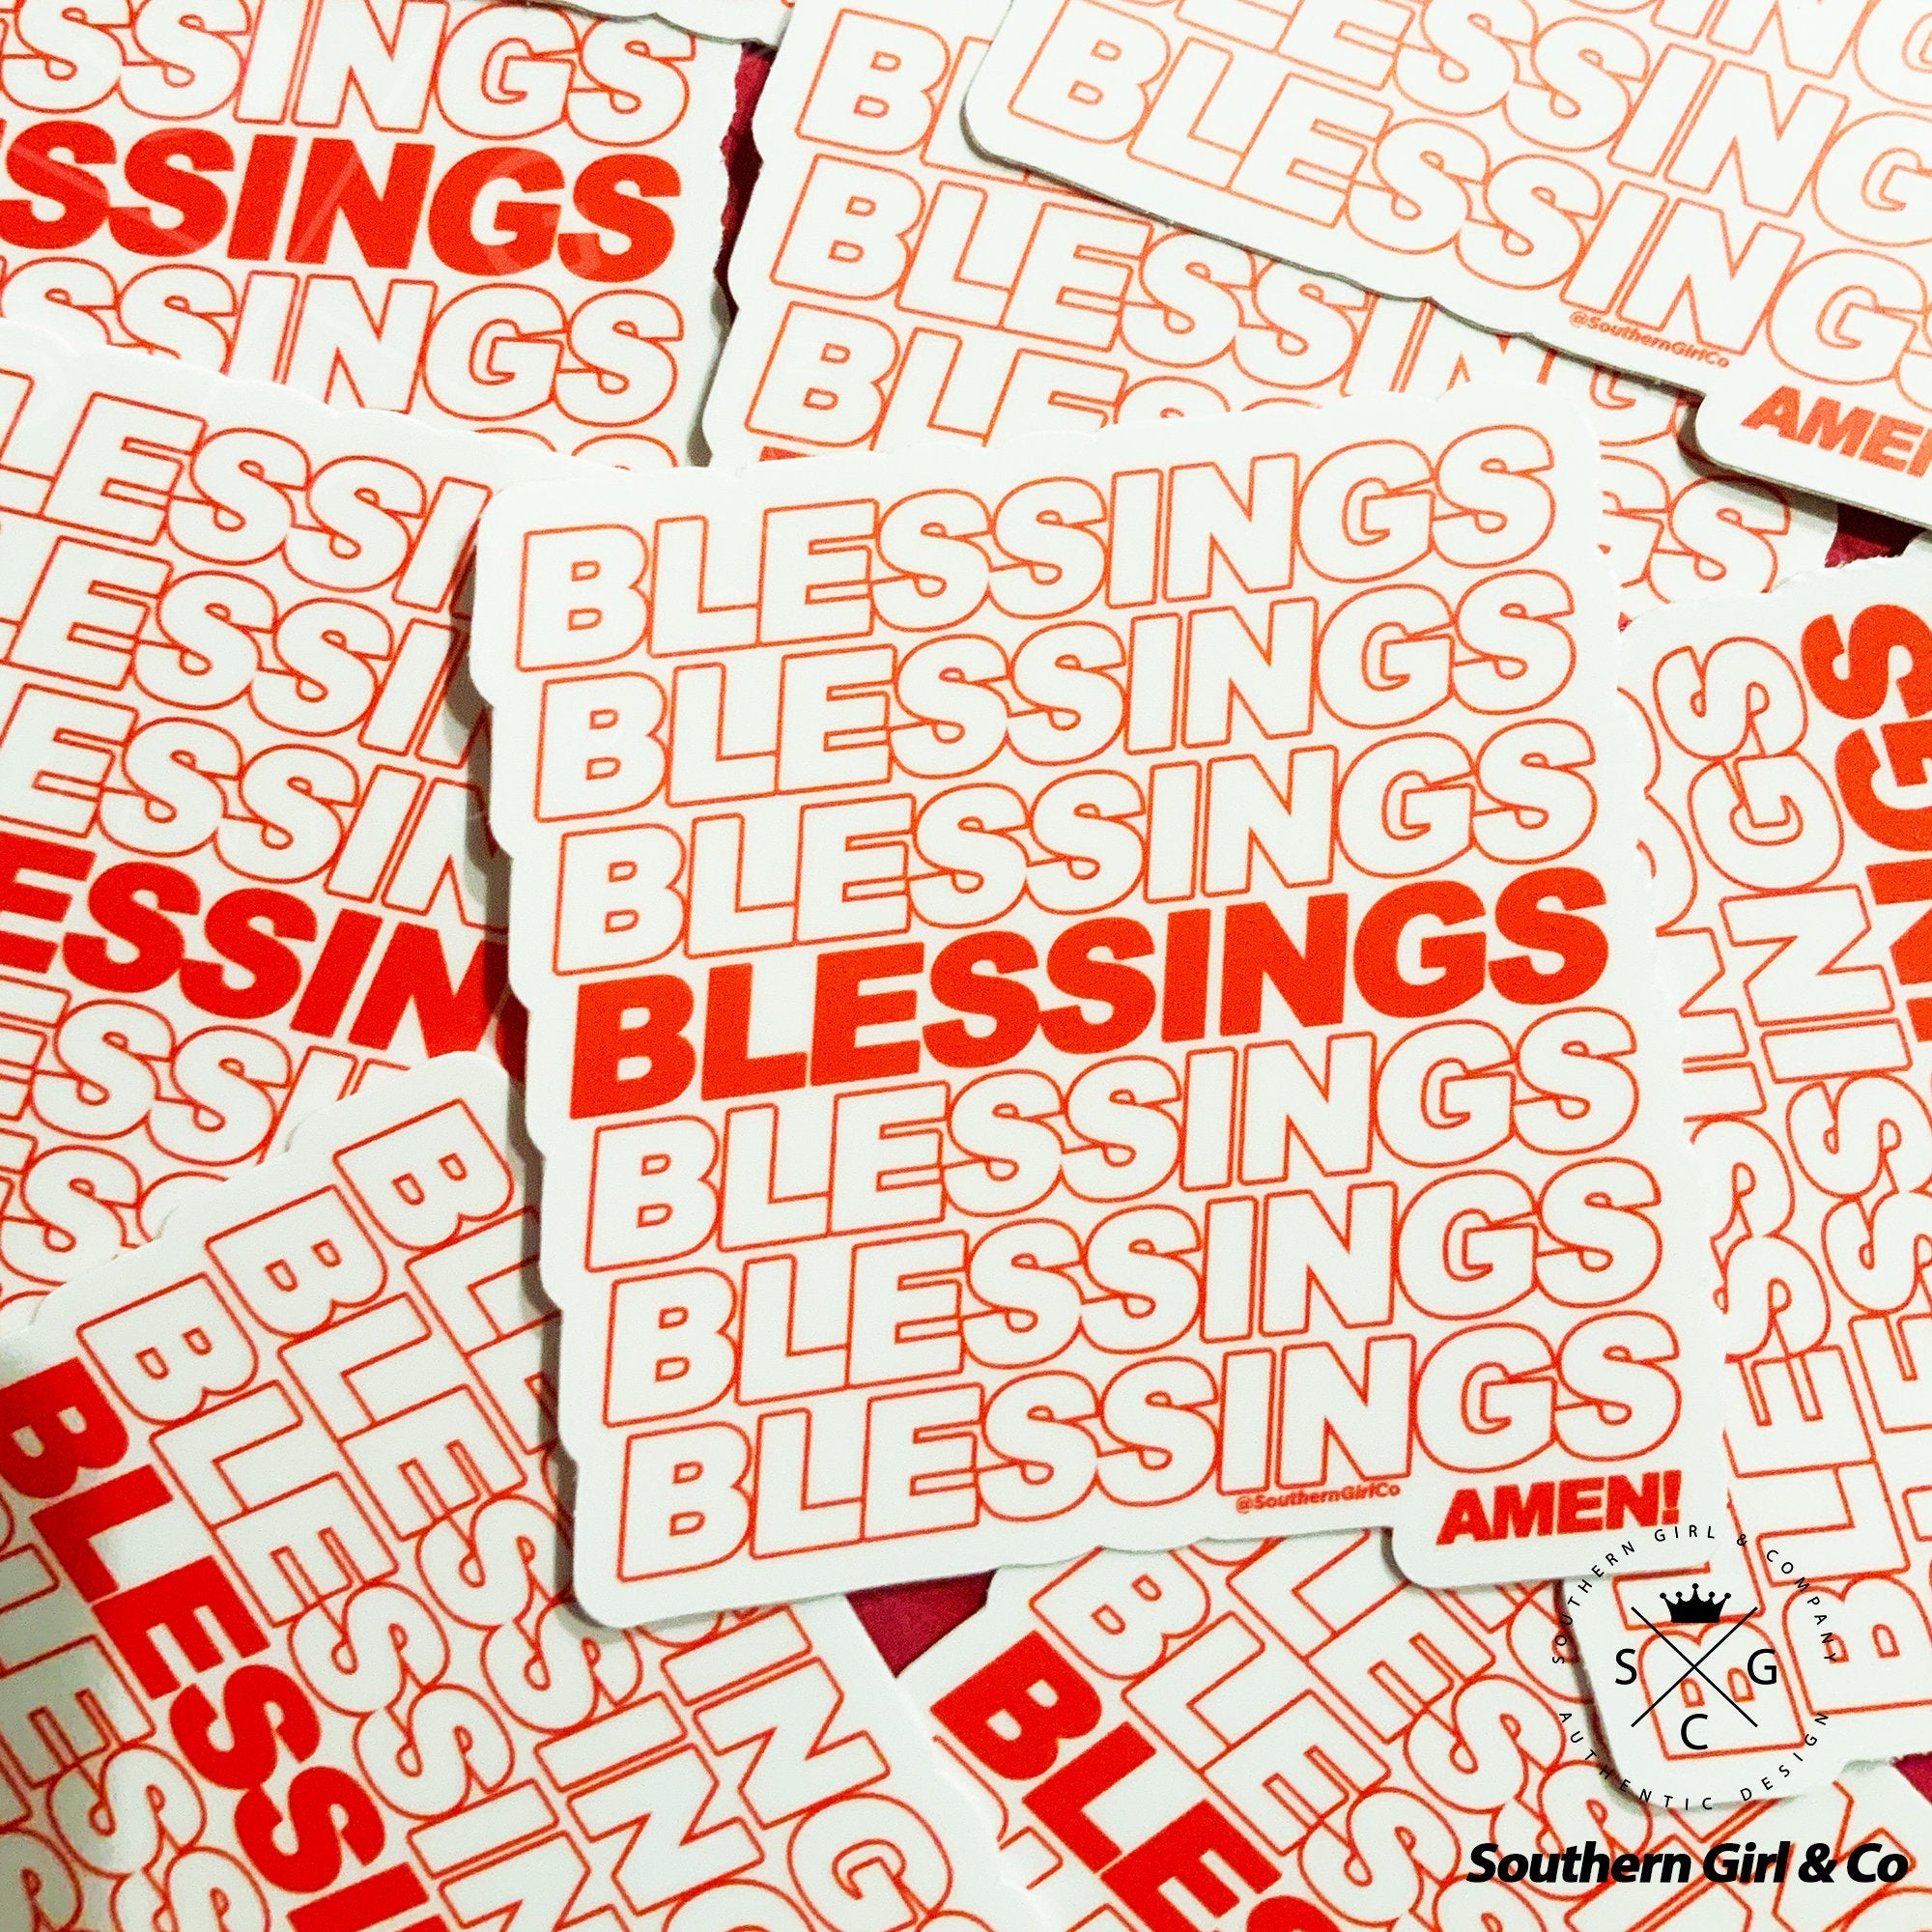 Blessings on Blessings Sticker